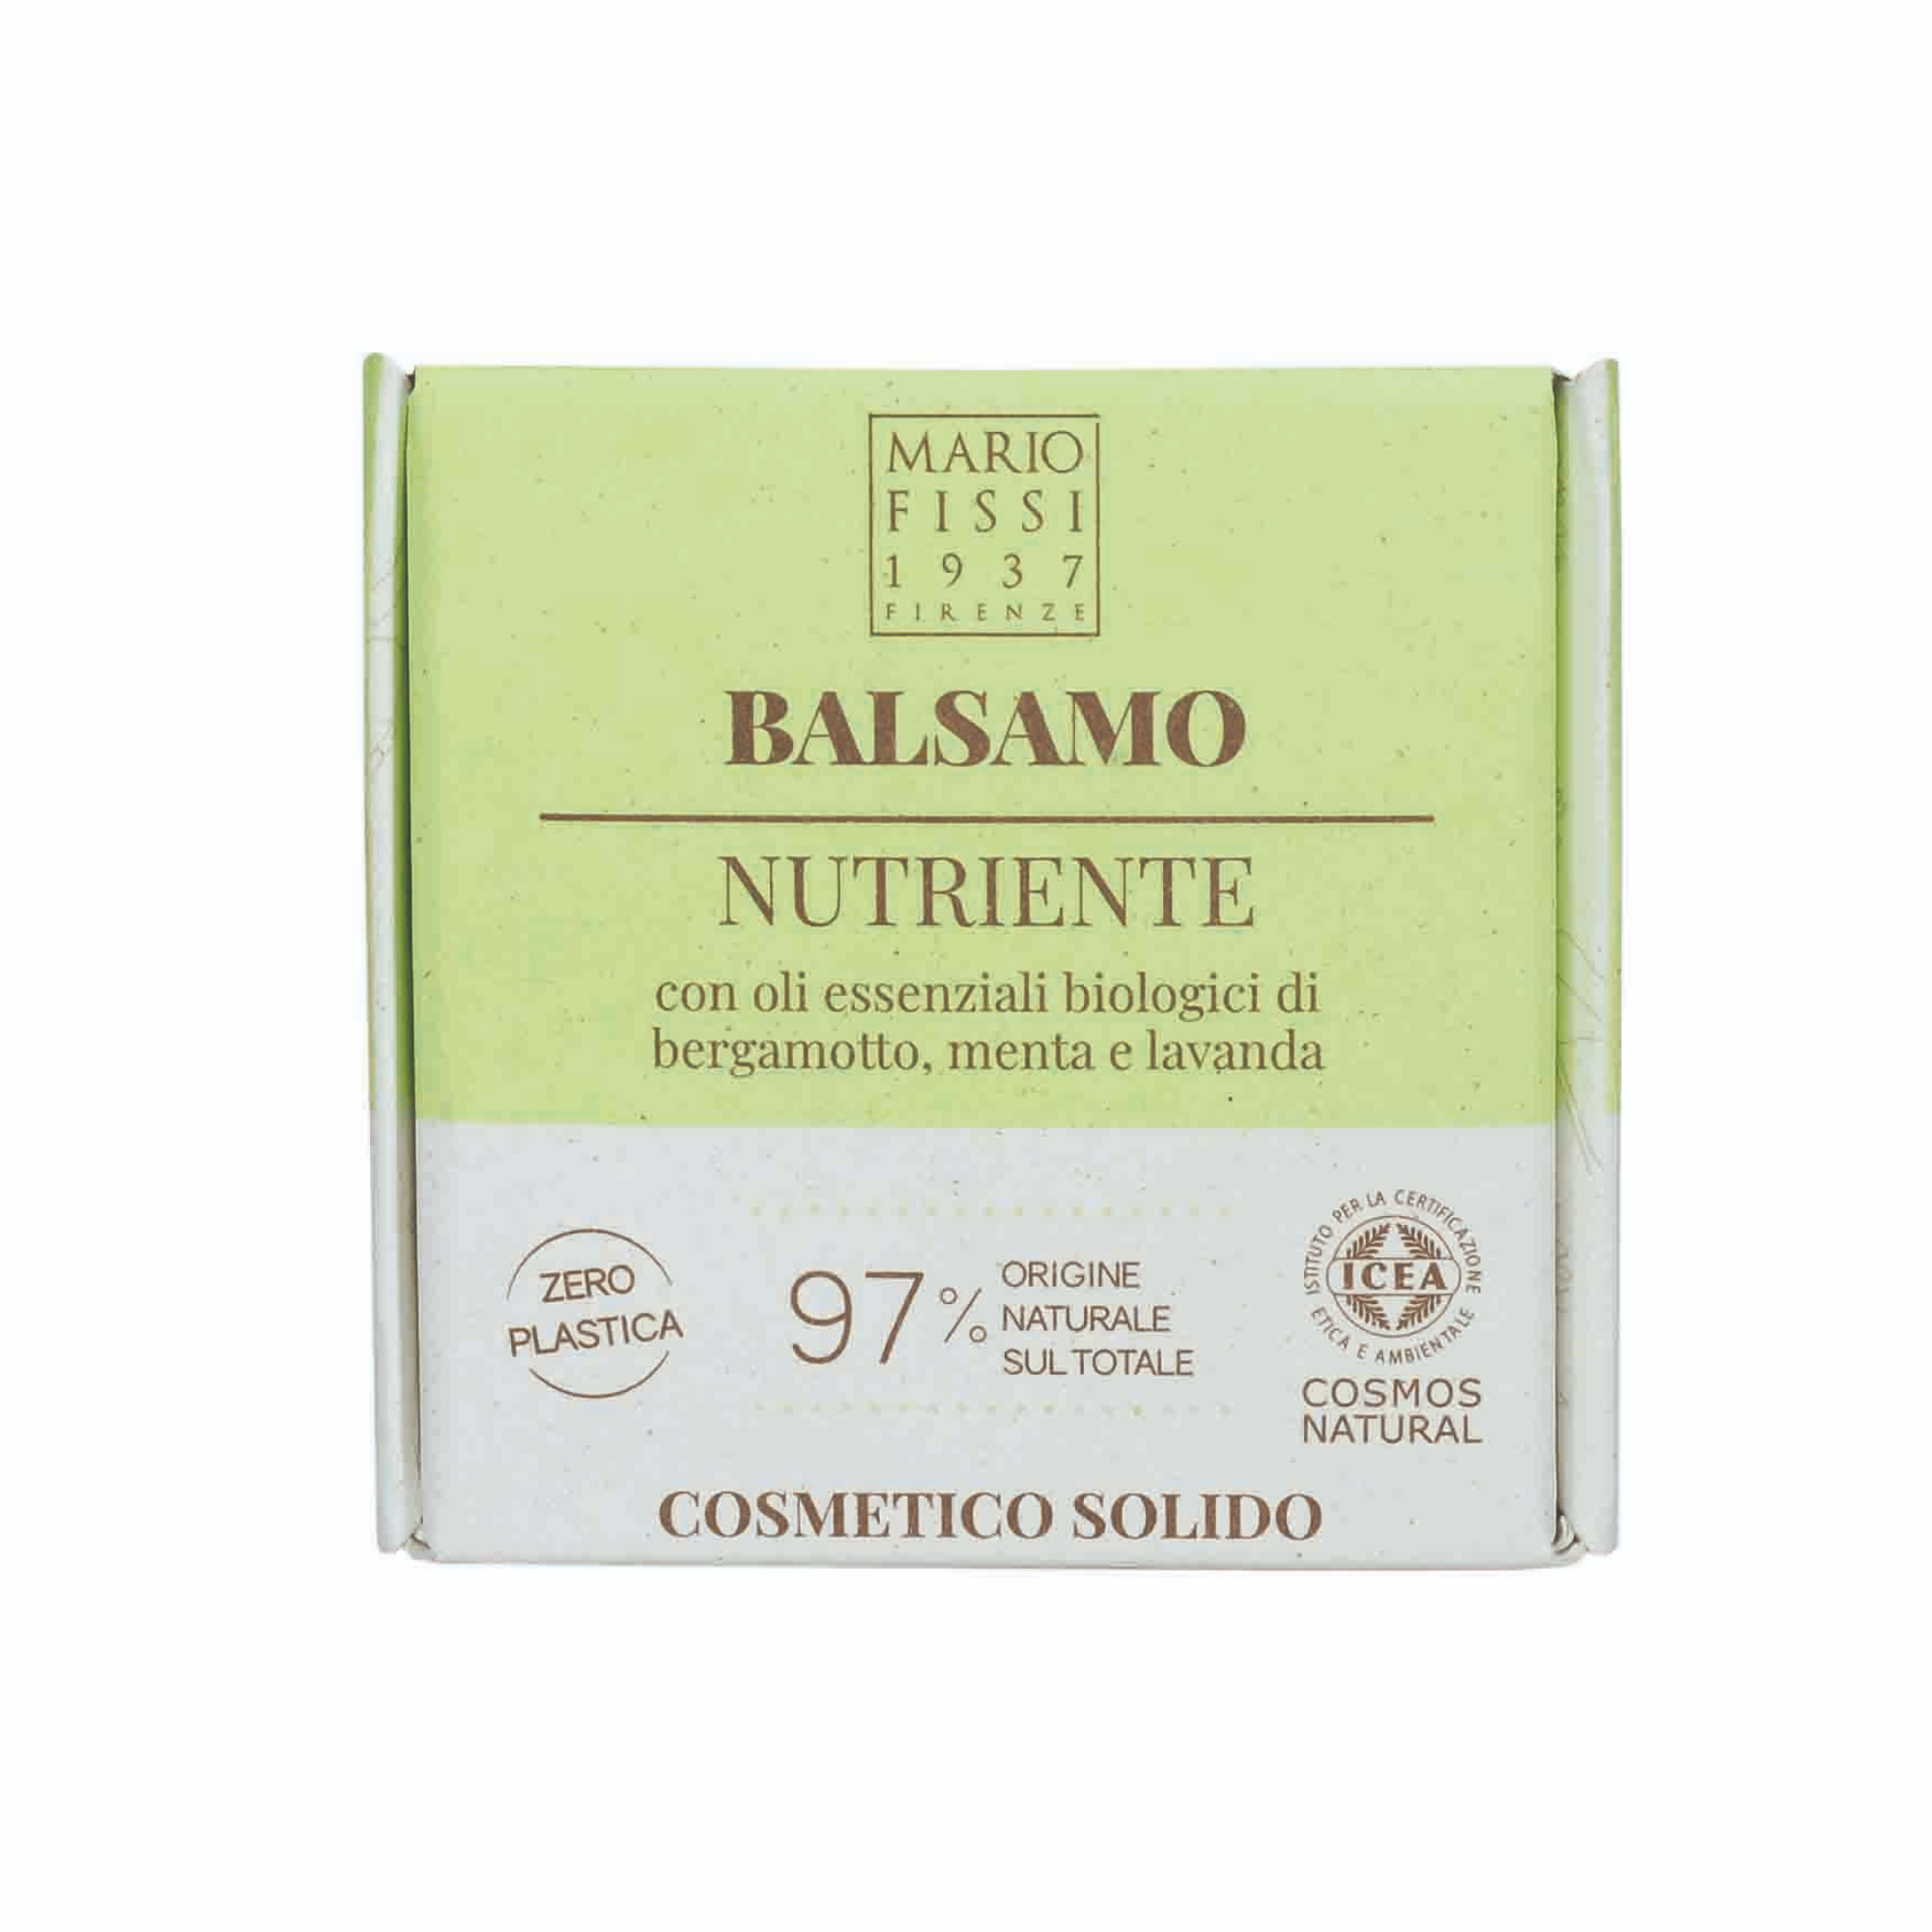 Твердый бальзам для волос Mario Fissi 1937 Solid cosmetics Nutriente Питательный 50 г бальзам восстан с маслом льна для повр волос с антистатич эф 380 мл